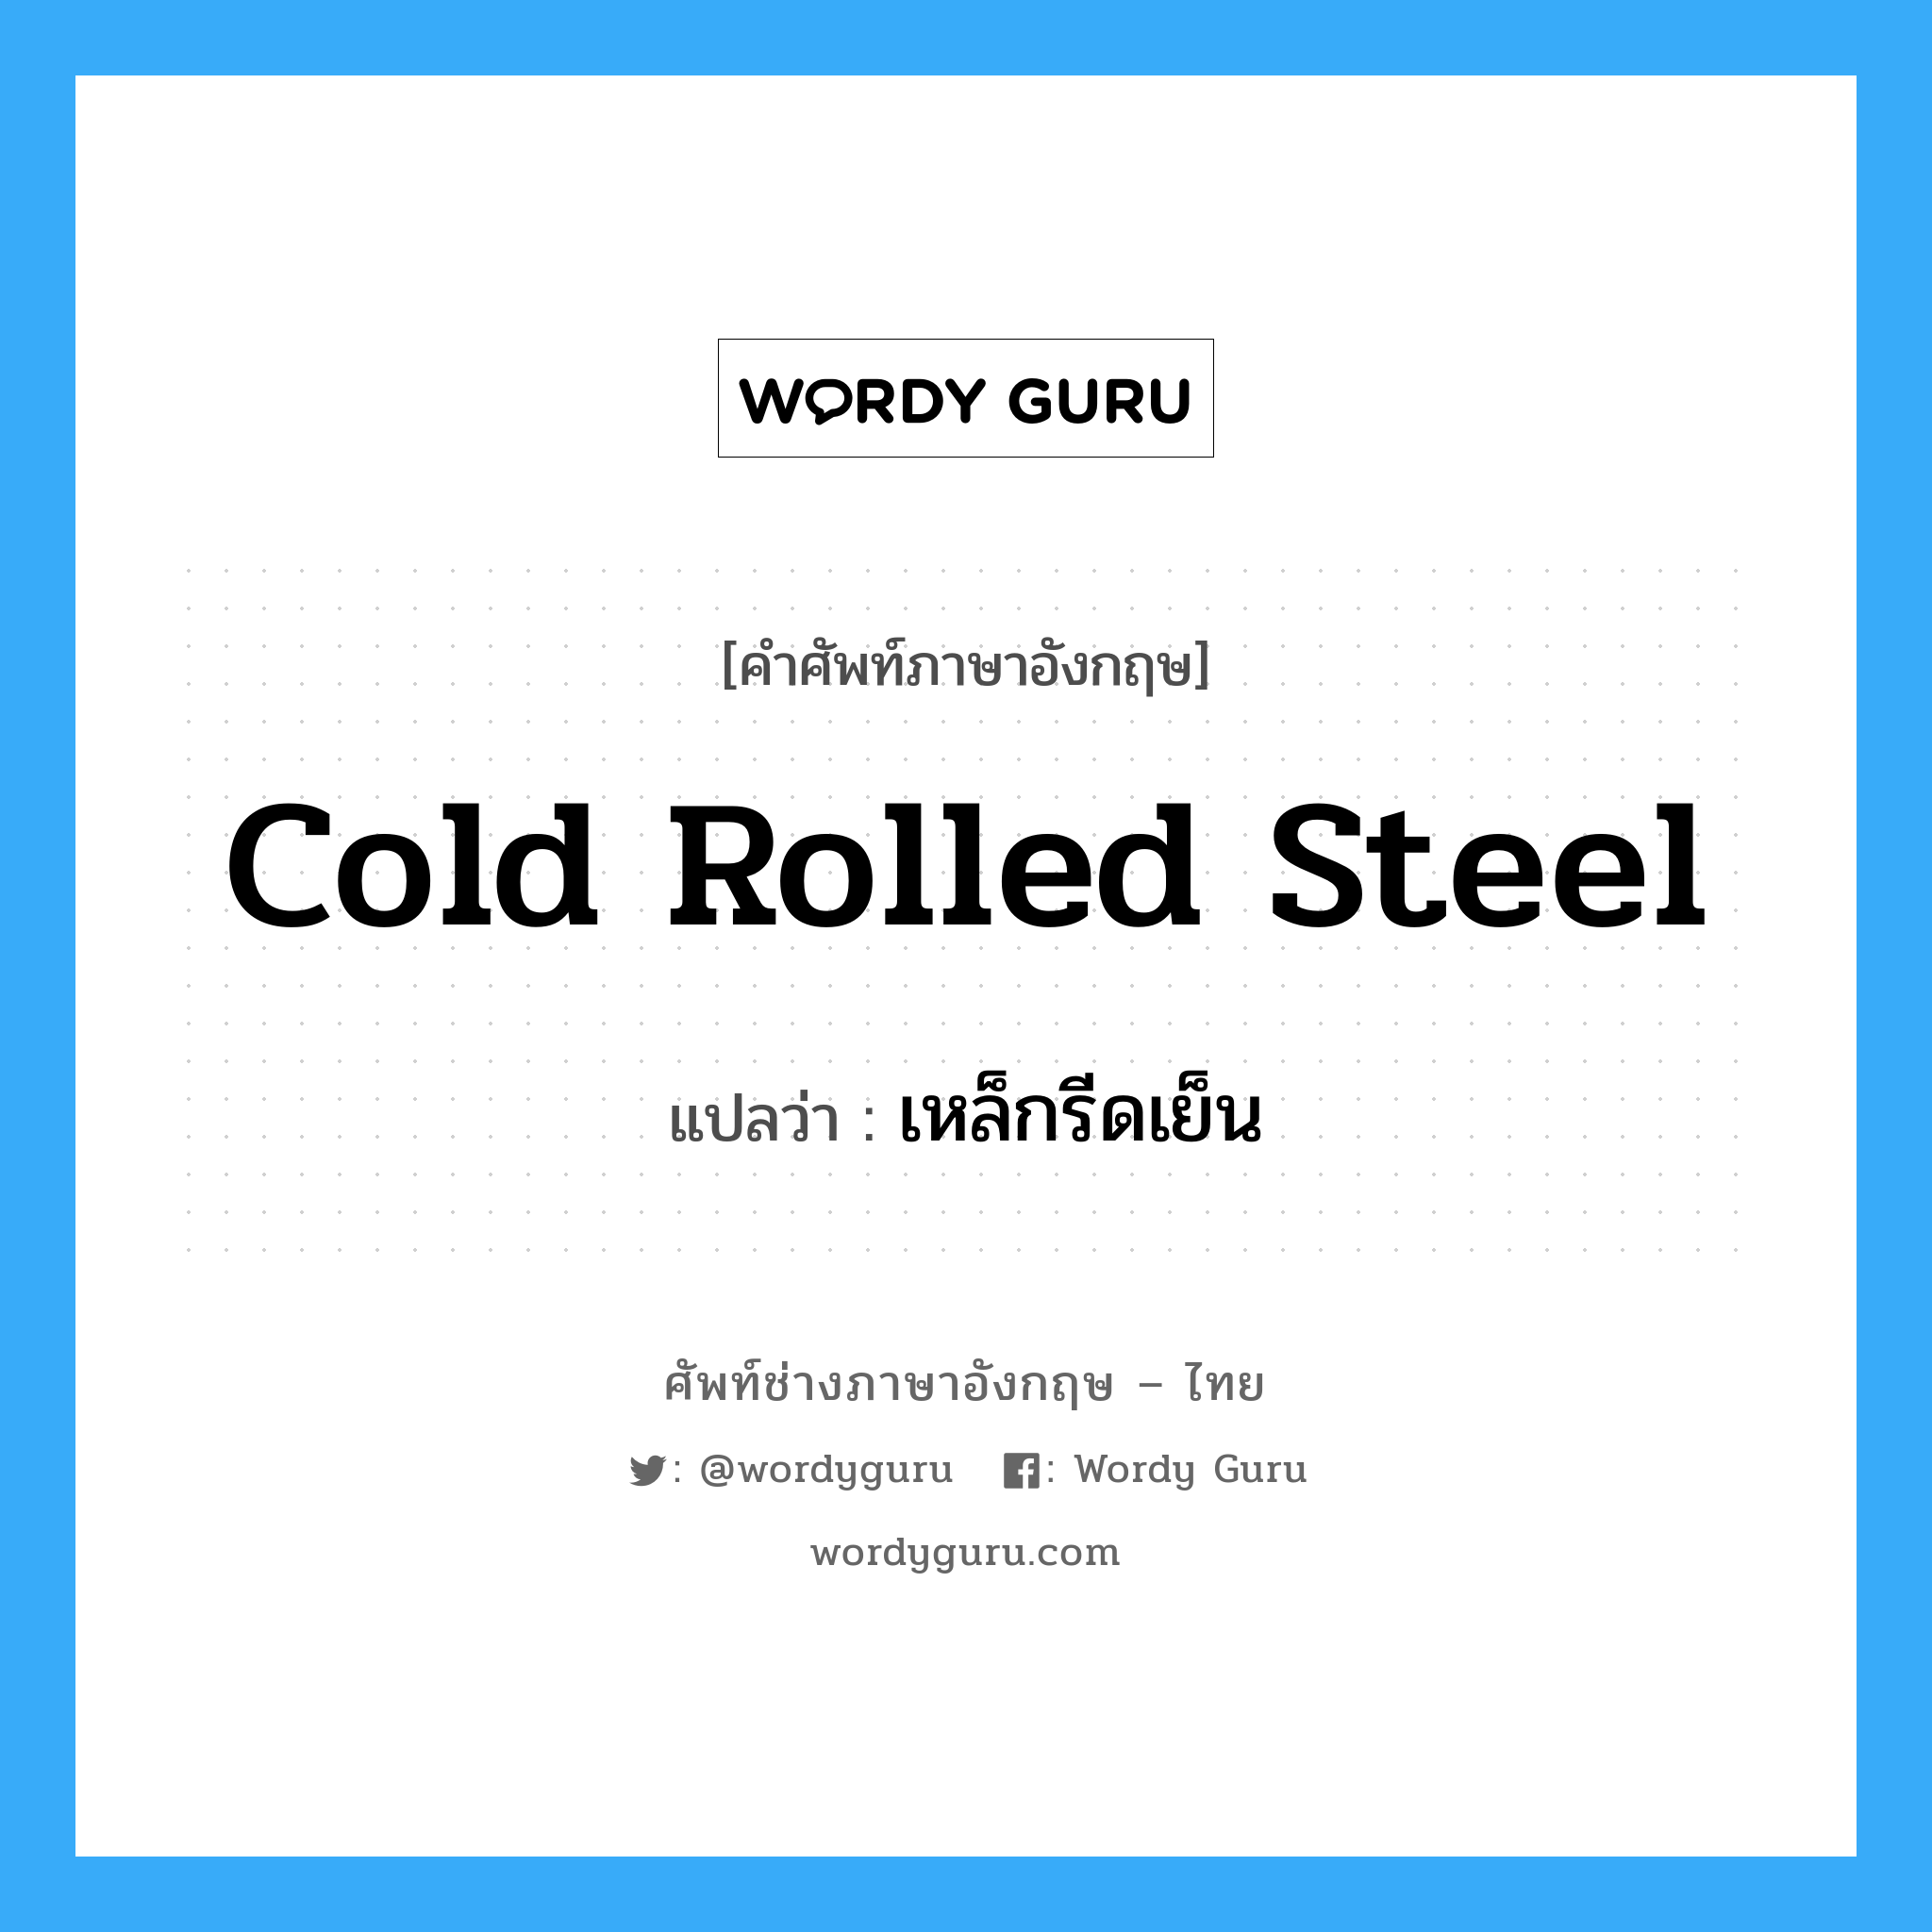 เหล็กรีดเย็น ภาษาอังกฤษ?, คำศัพท์ช่างภาษาอังกฤษ - ไทย เหล็กรีดเย็น คำศัพท์ภาษาอังกฤษ เหล็กรีดเย็น แปลว่า cold rolled steel